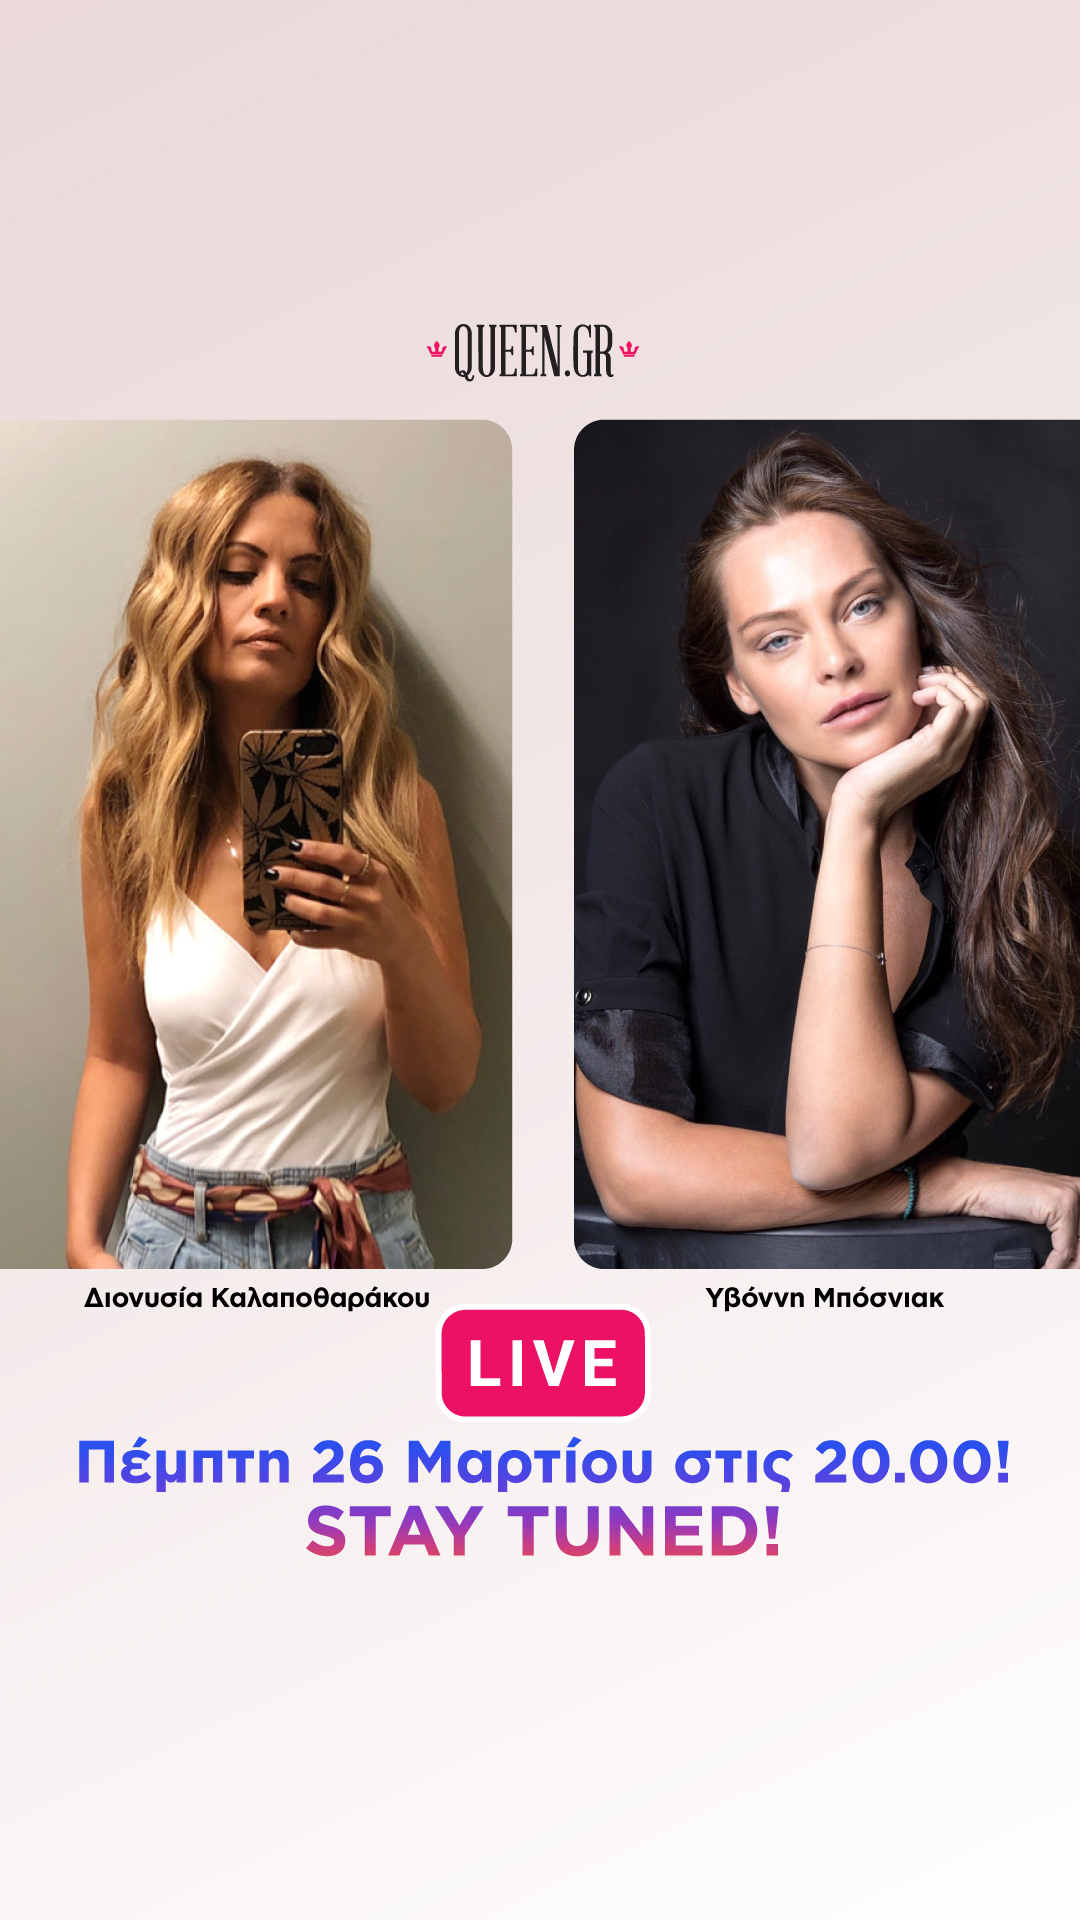 Σε λίγο η Yvonne Bosnjak ζωντανά στο Instagram Live του Queen.gr!